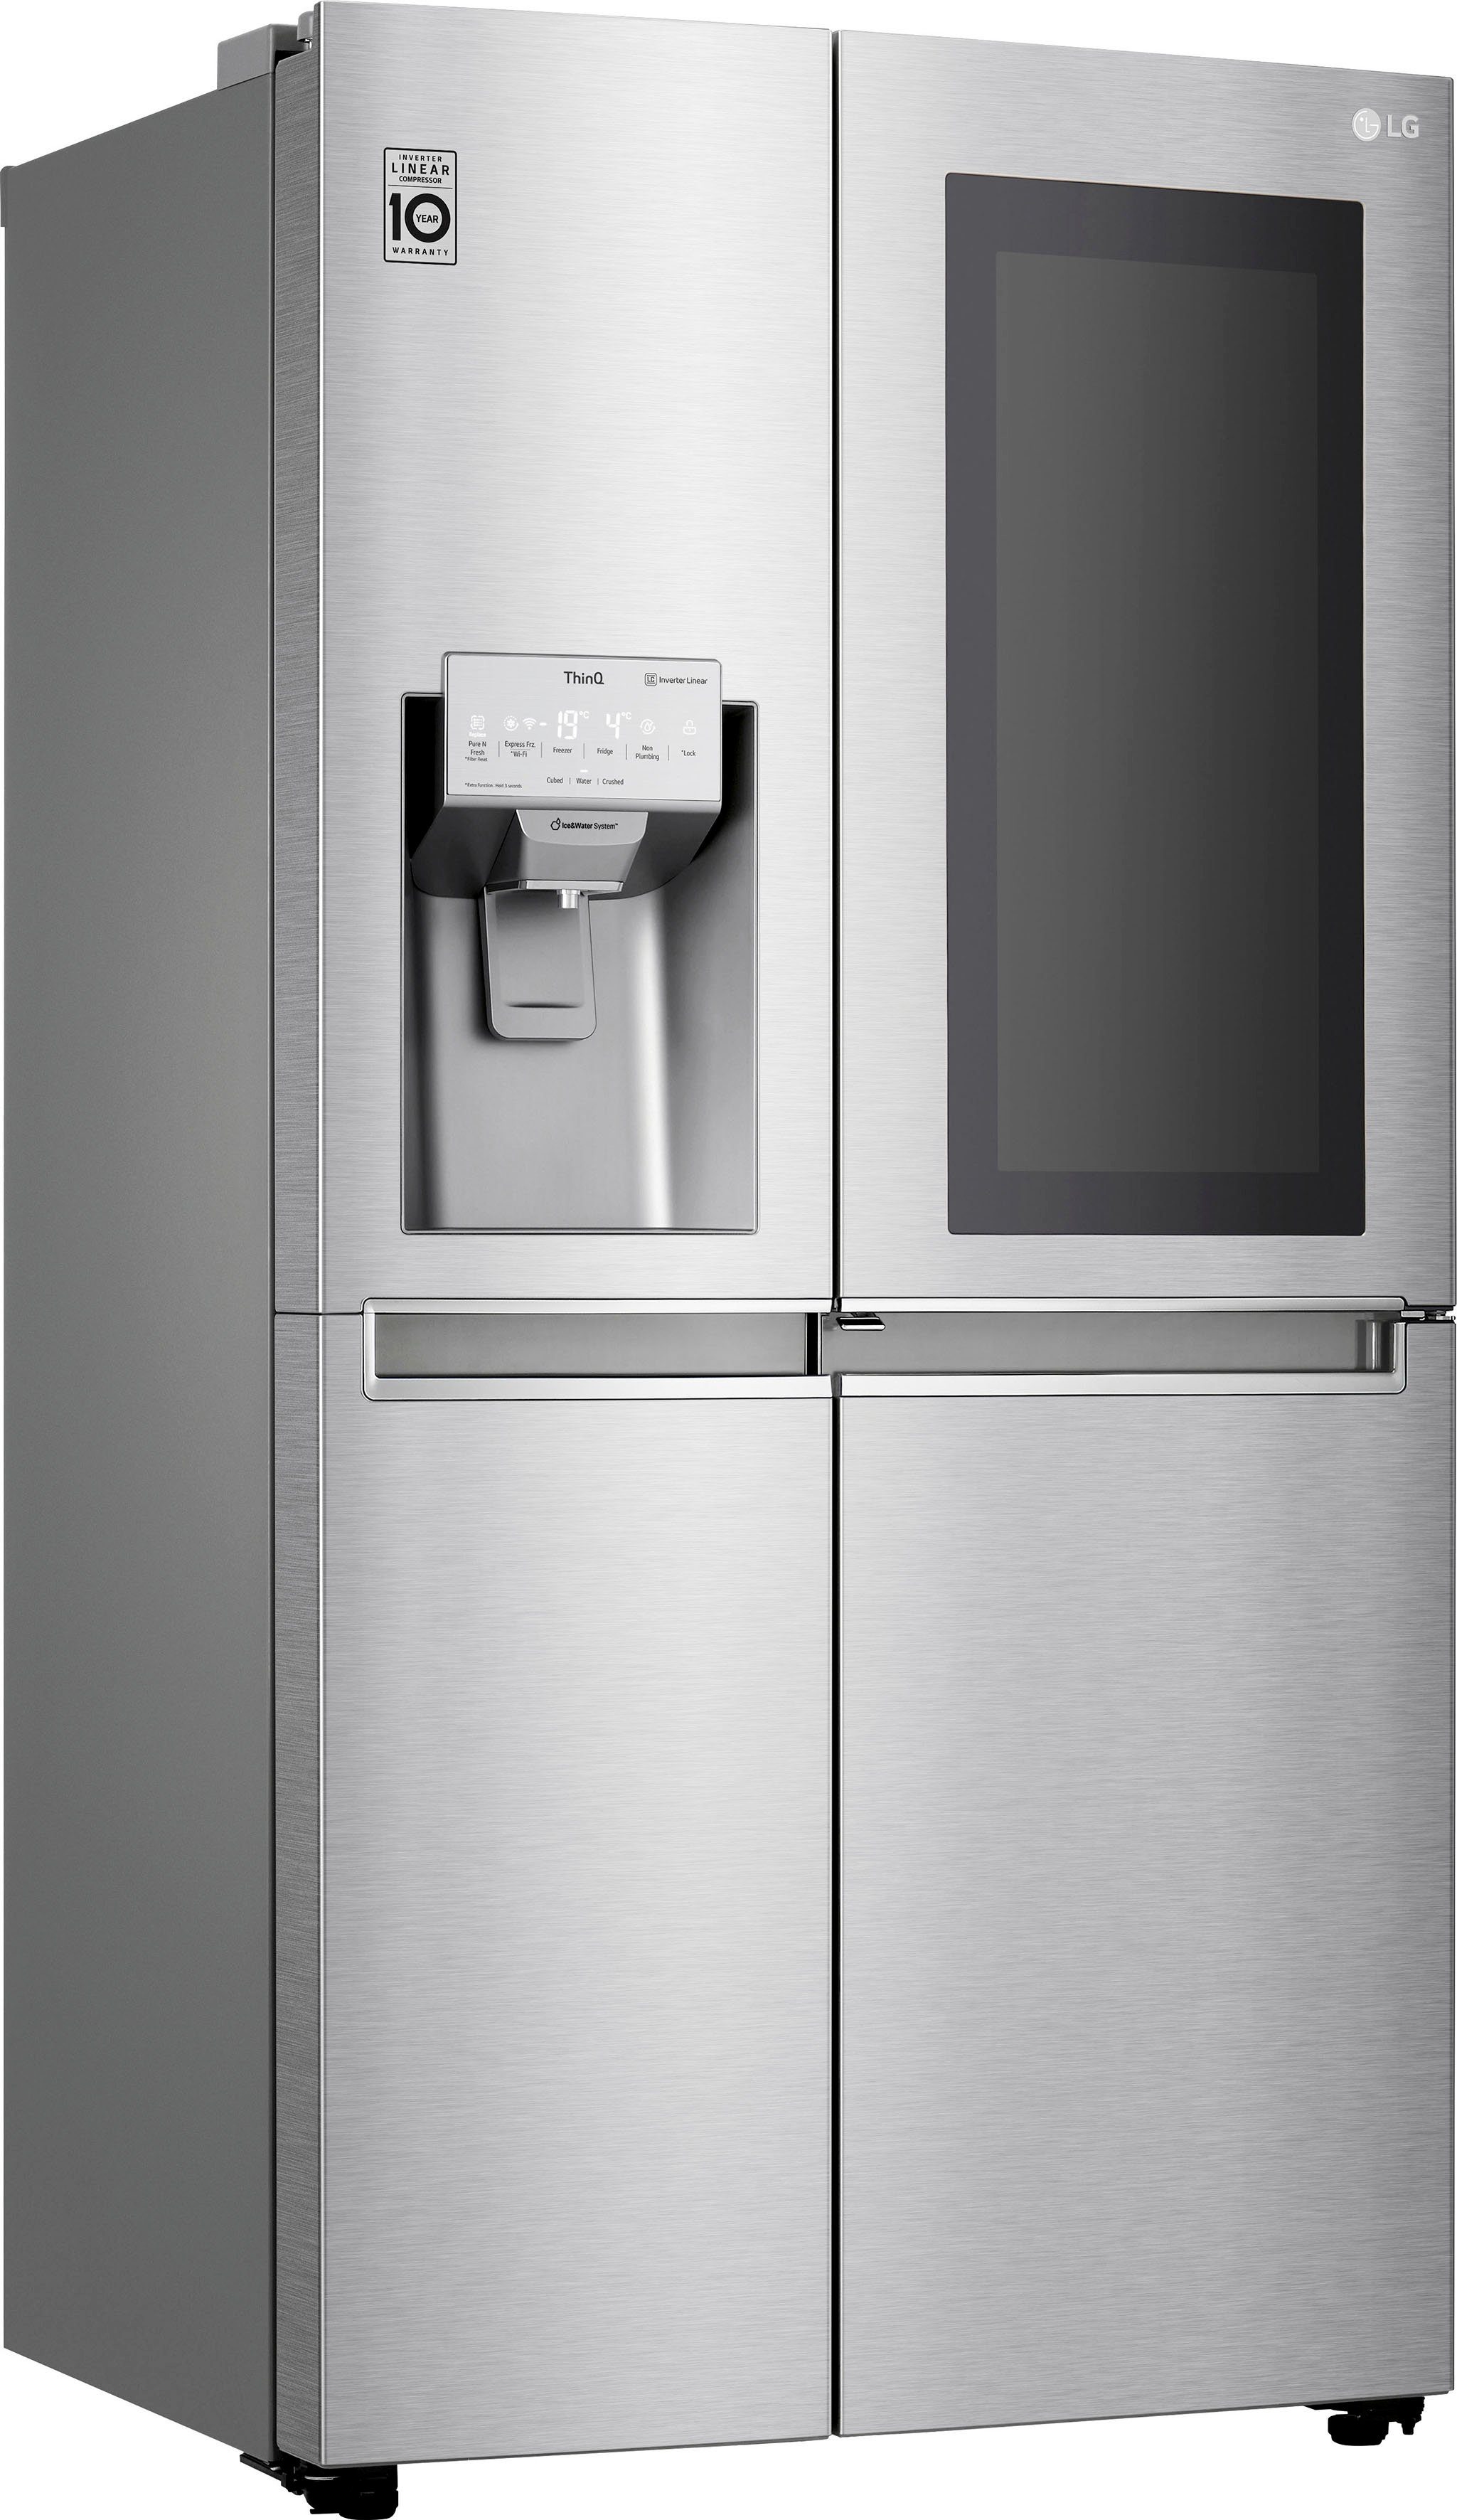 Kühlschrank mit Eiswürfelspender online kaufen | OTTO